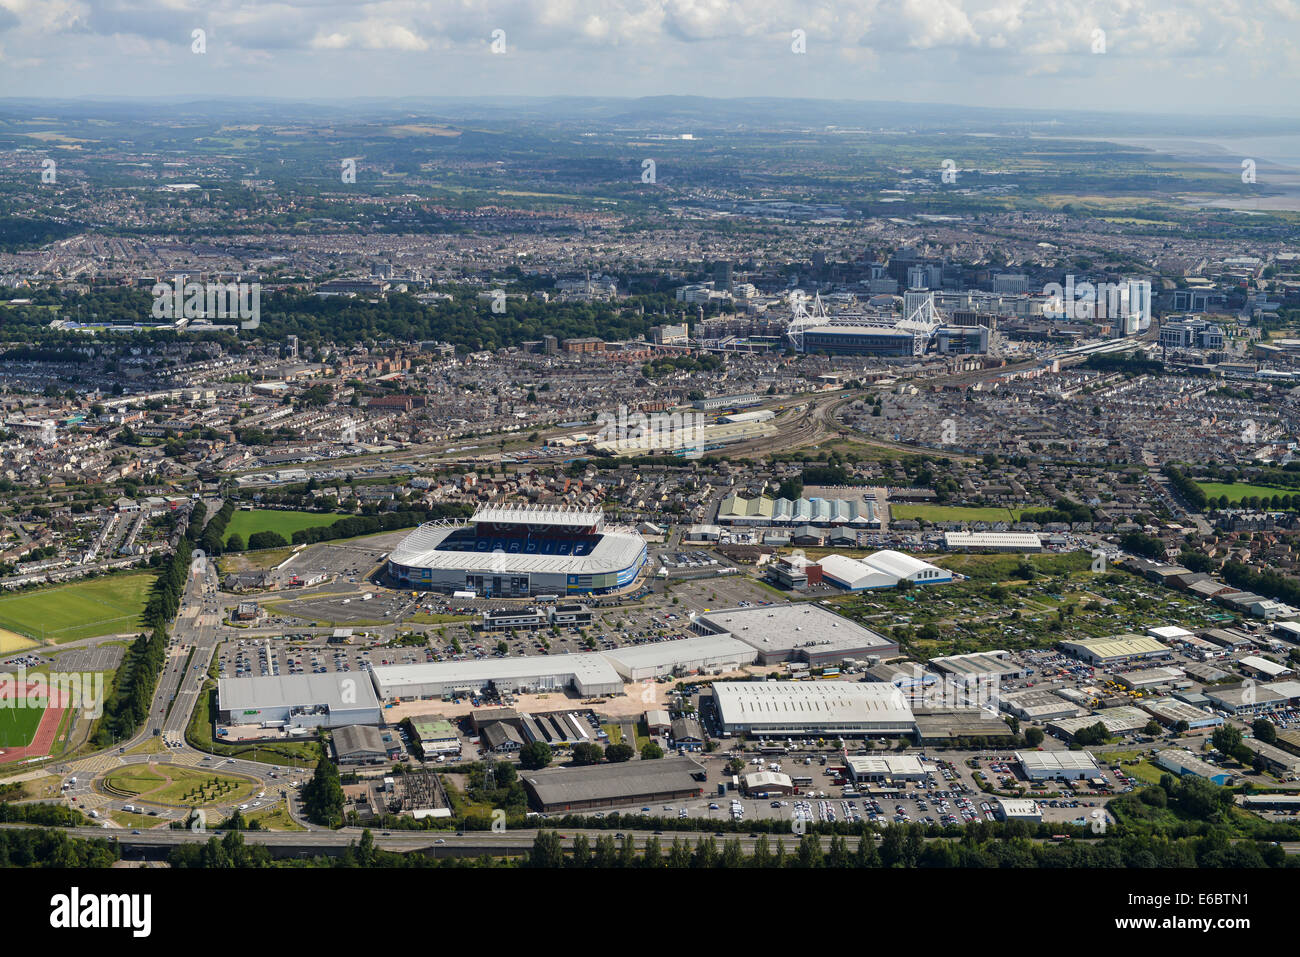 Una veduta aerea di Cardiff, Galles del Sud. Guardando dalla parte ovest con la città di Cardiff e lo stadio Millenium Stadium sia visibile. Foto Stock